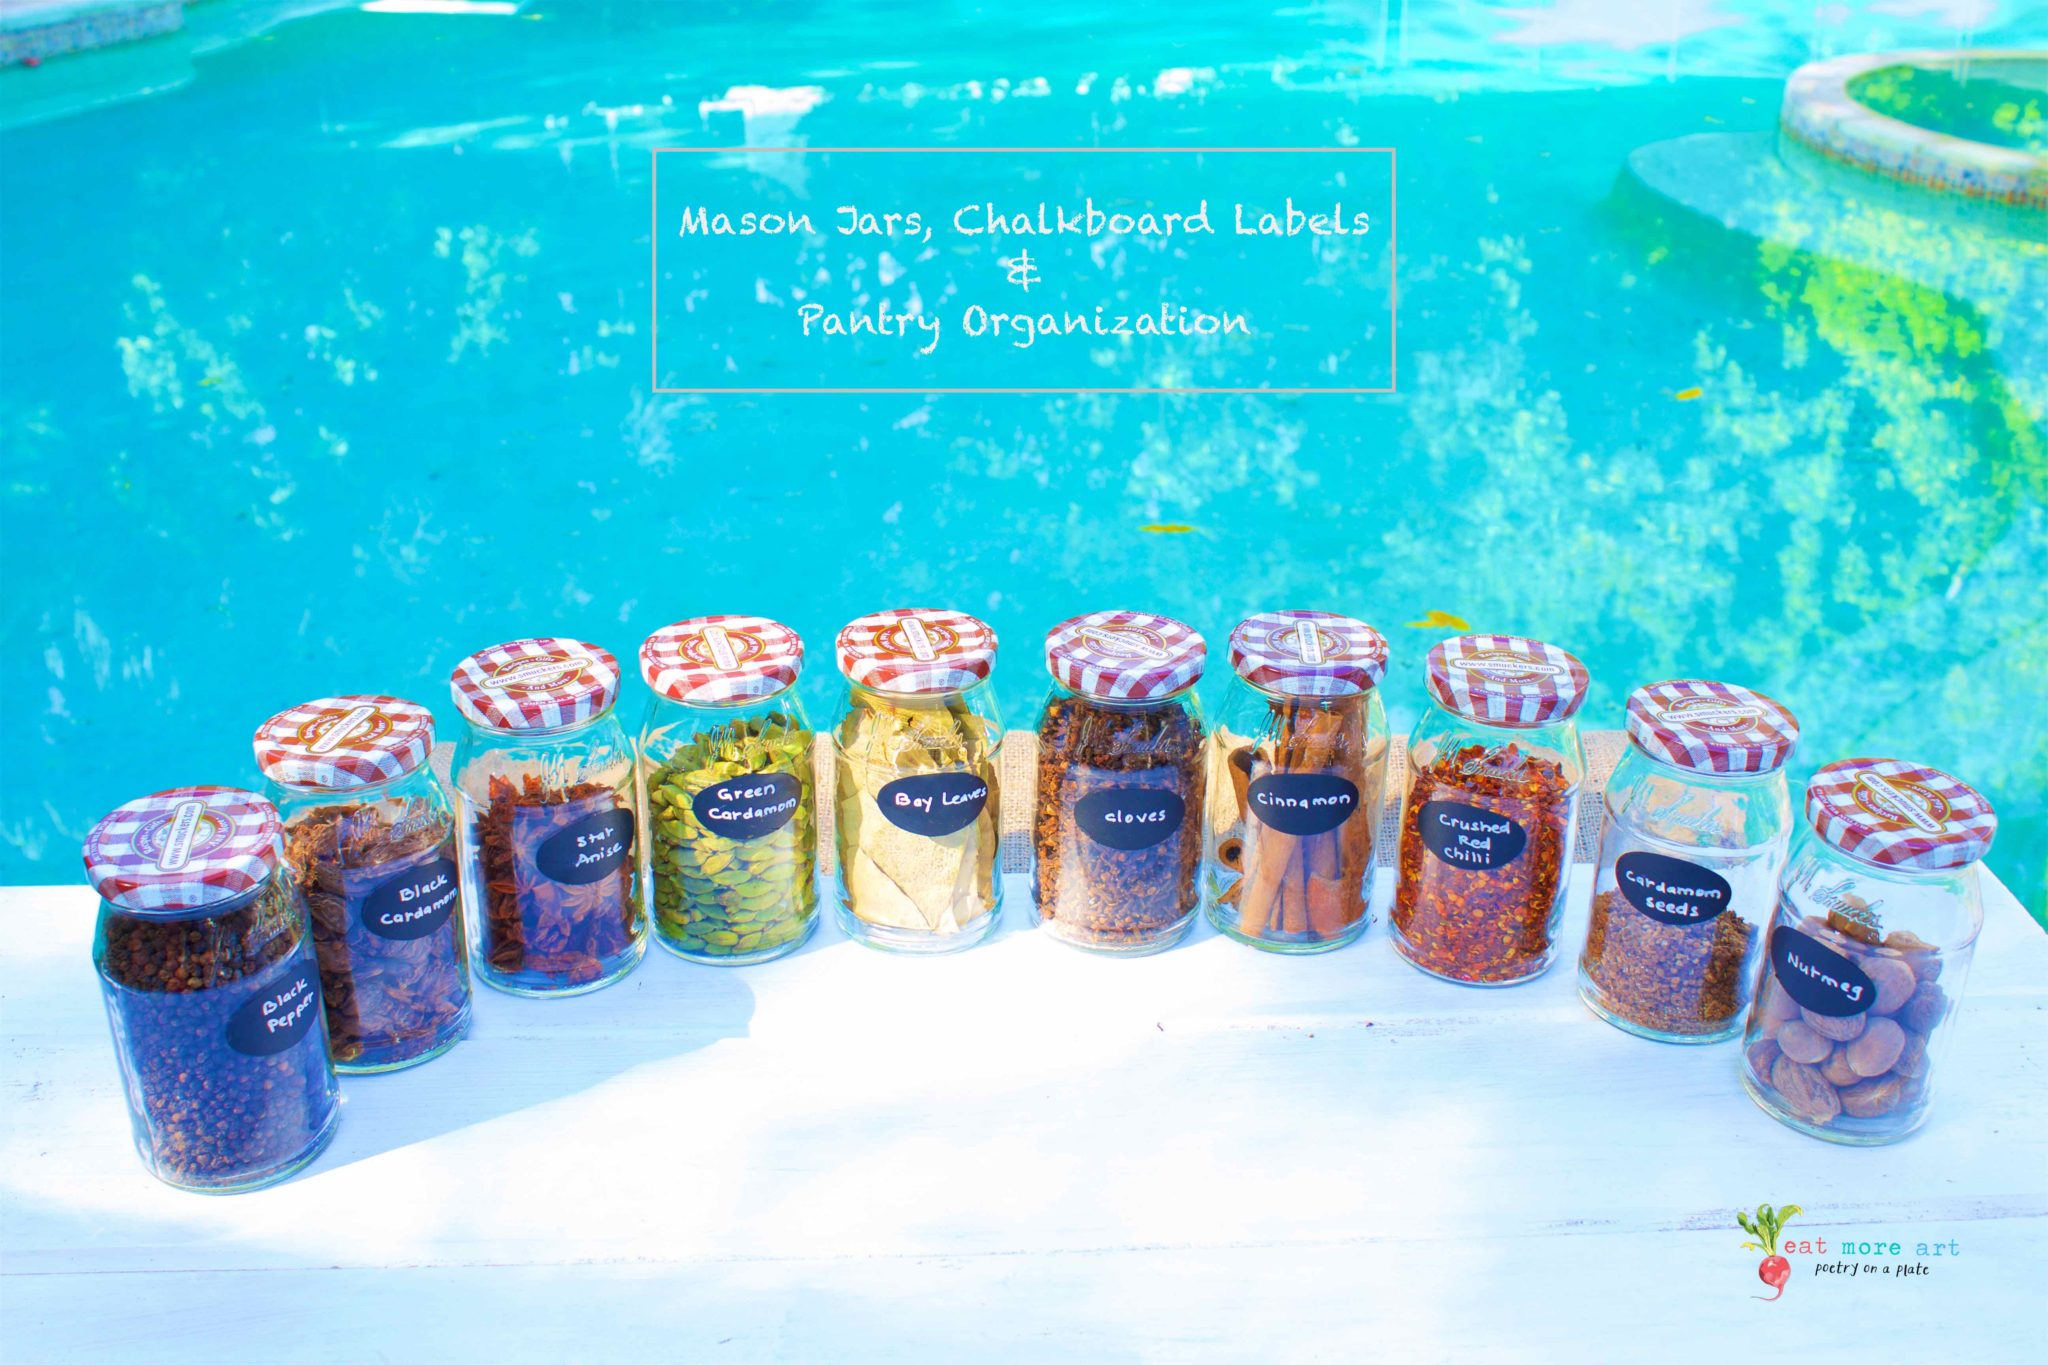 Mason Jars, Chalkboard Labels and Pantry & Kitchen Organization